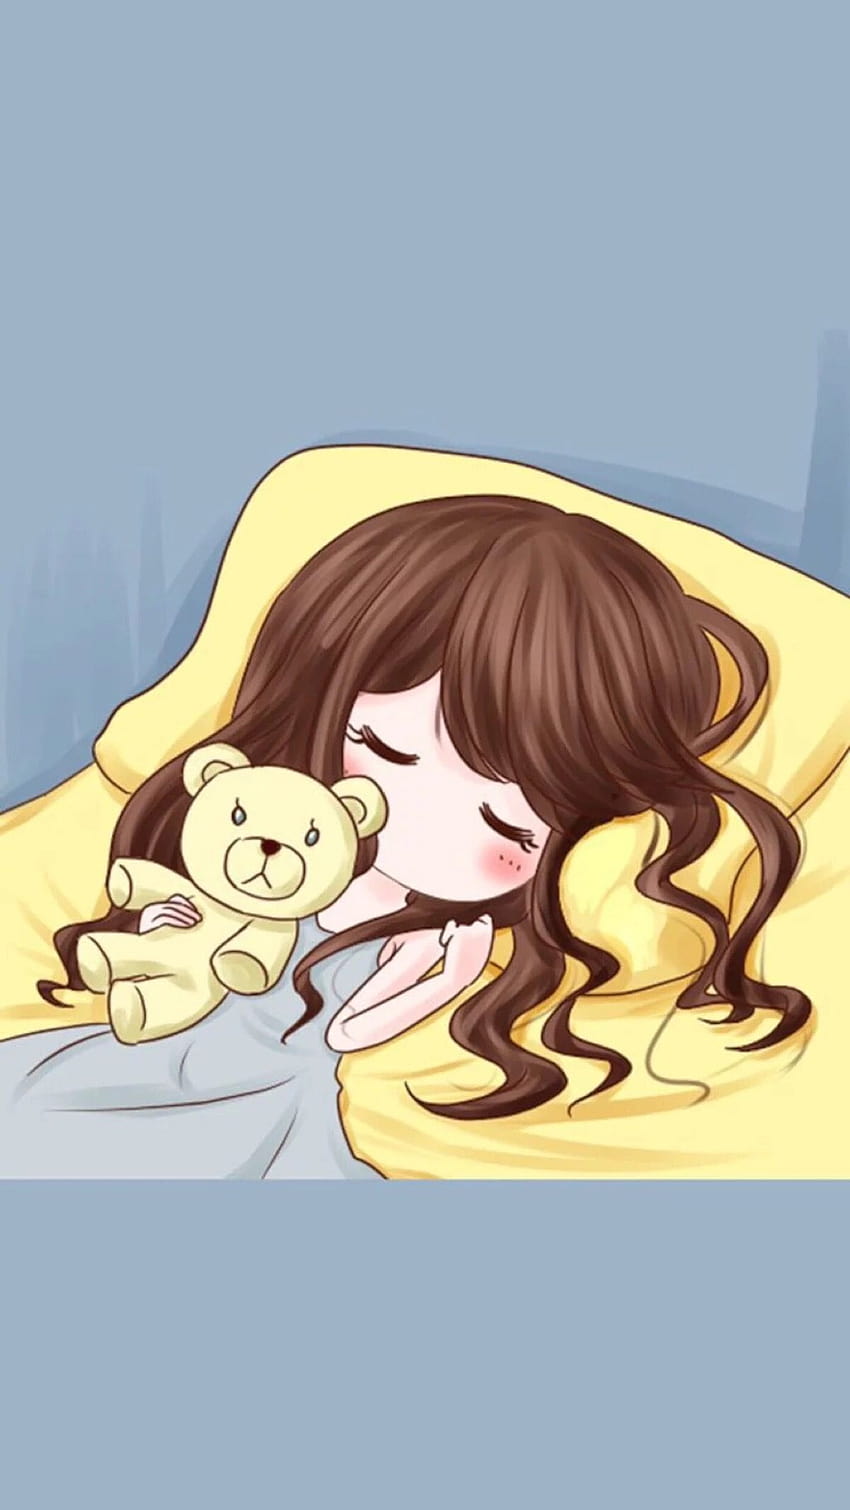 Tidur Kartun, gadis anime yang mengantuk wallpaper ponsel HD